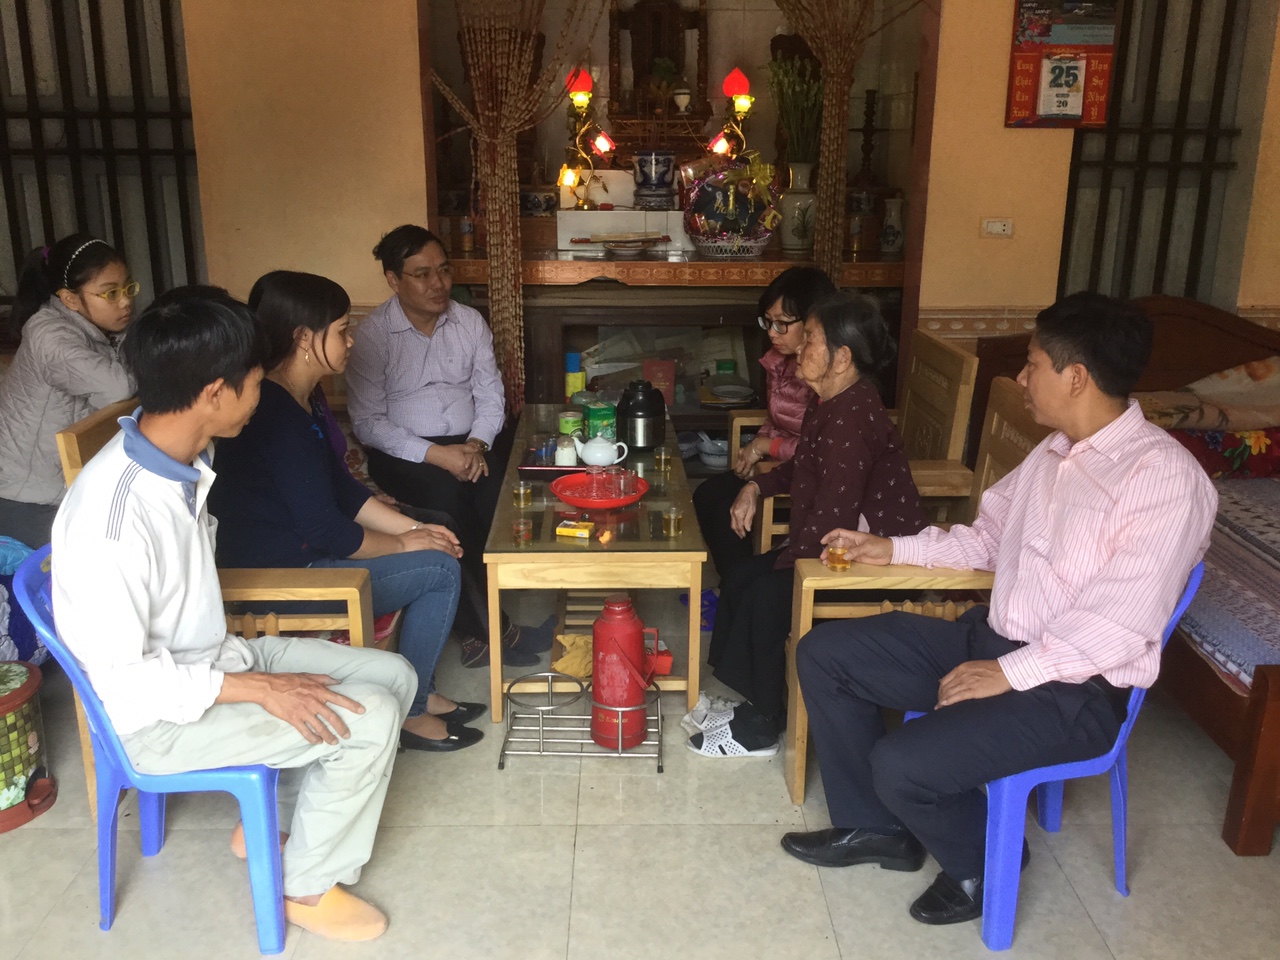 Cục Thống kê Thái Bình tổ chức thăm Bà mẹ VNAH và dâng hương tại Đền thờ Liệt sỹ tỉnh nhân dịp Tết Nguyên đán Kỷ Hợi 2019